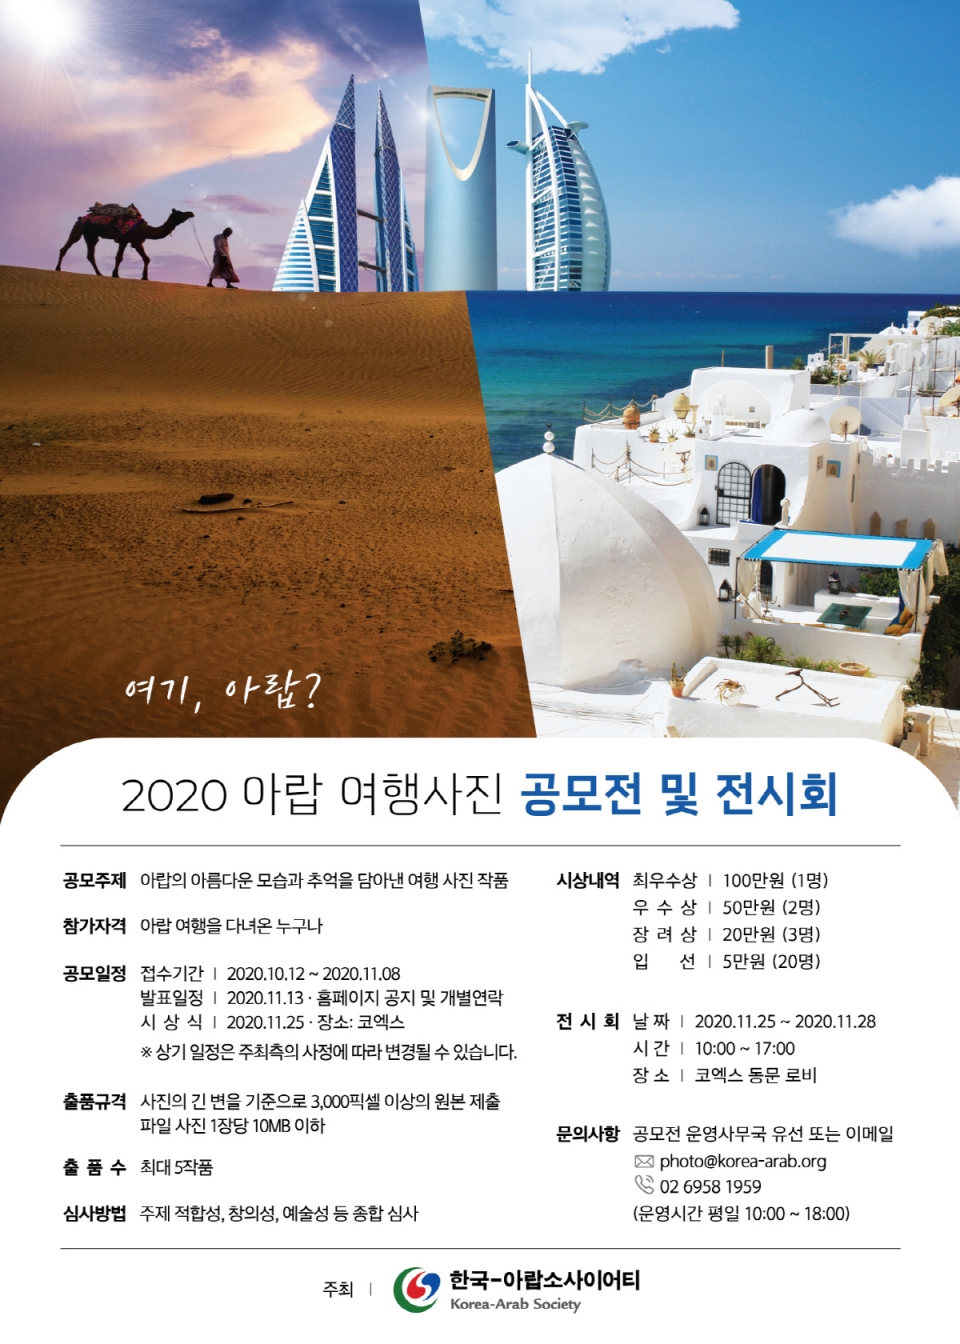 2020년 아랍 여행사진 공모전 포스터(한국-아랍소사이어티)